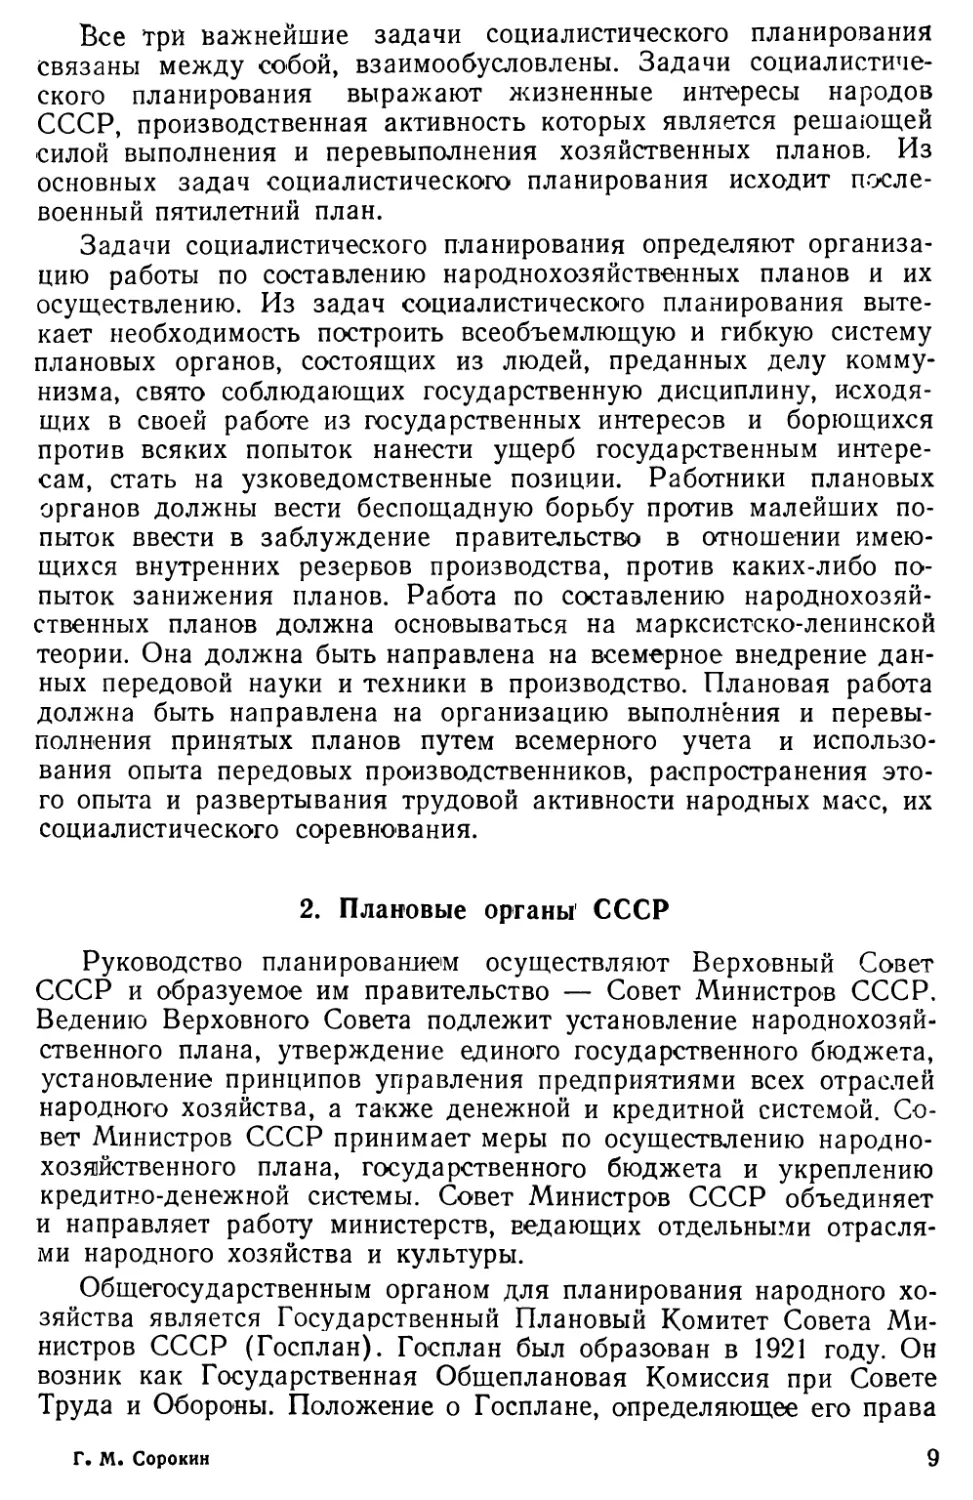 2. Плановые органы СССР